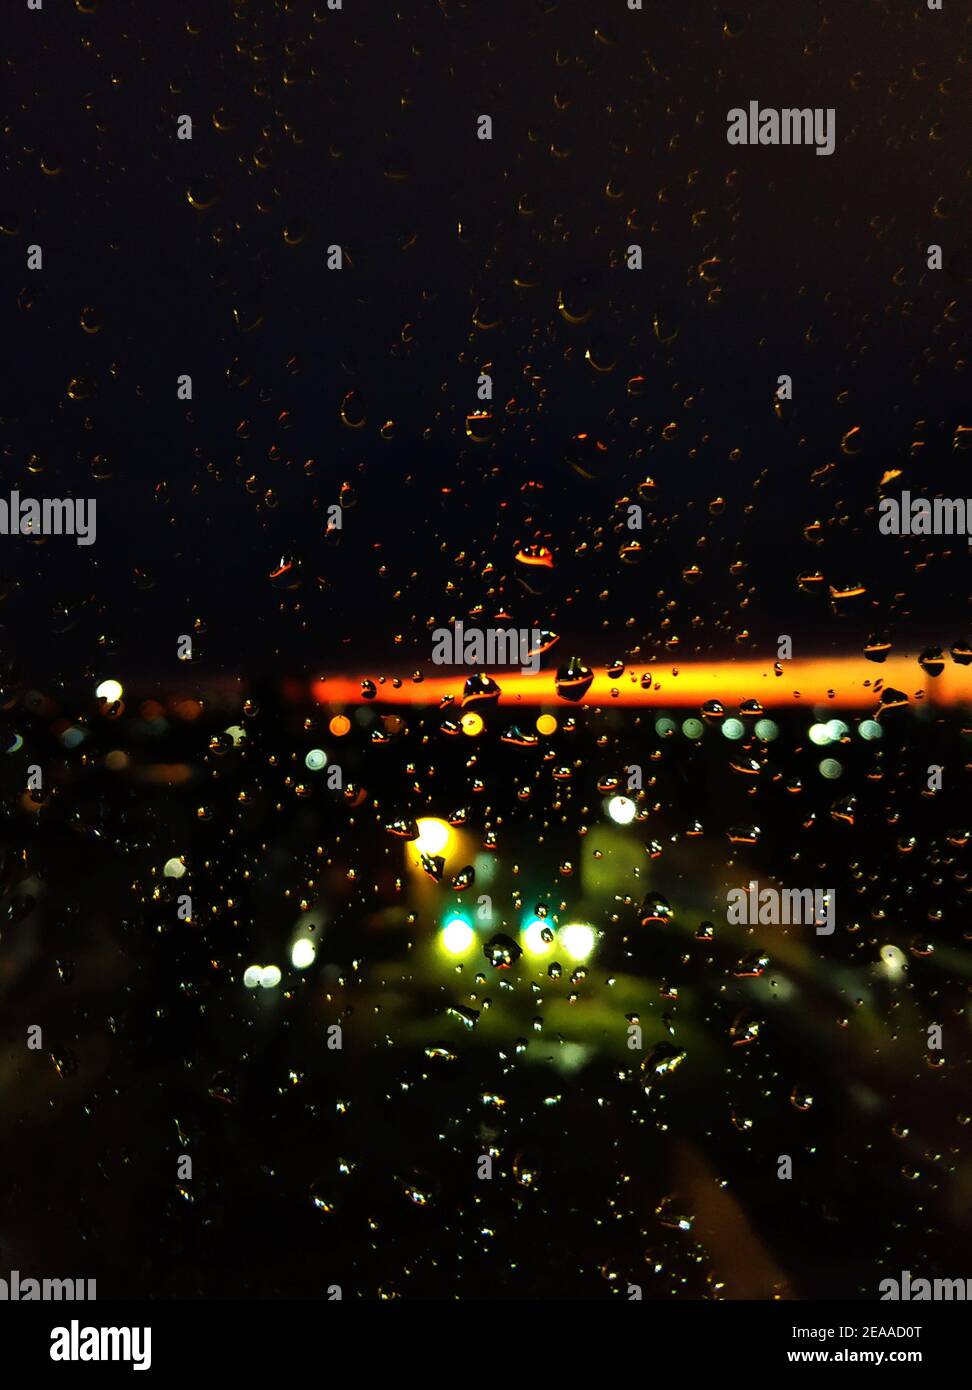 Gouttes de pluie sur le verre. Livin au coucher du soleil. Ciel nocturne avec une bande orange vif. Banque D'Images